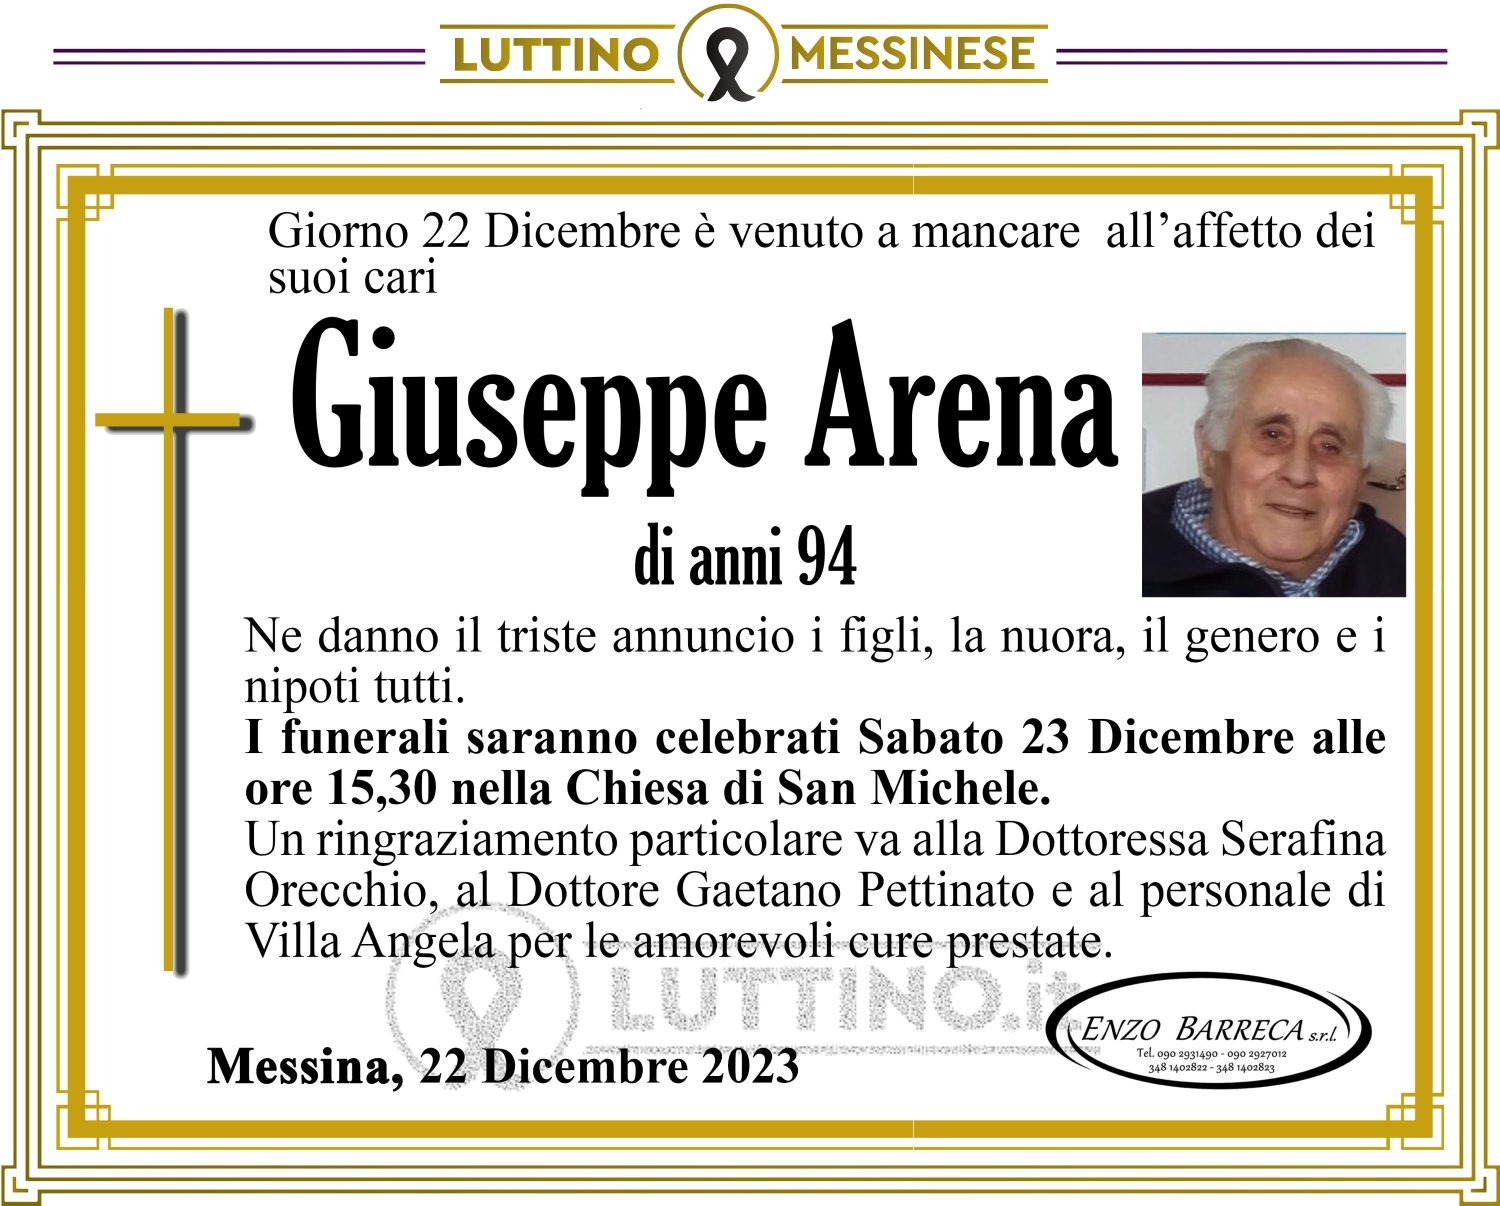 Giuseppe Arena